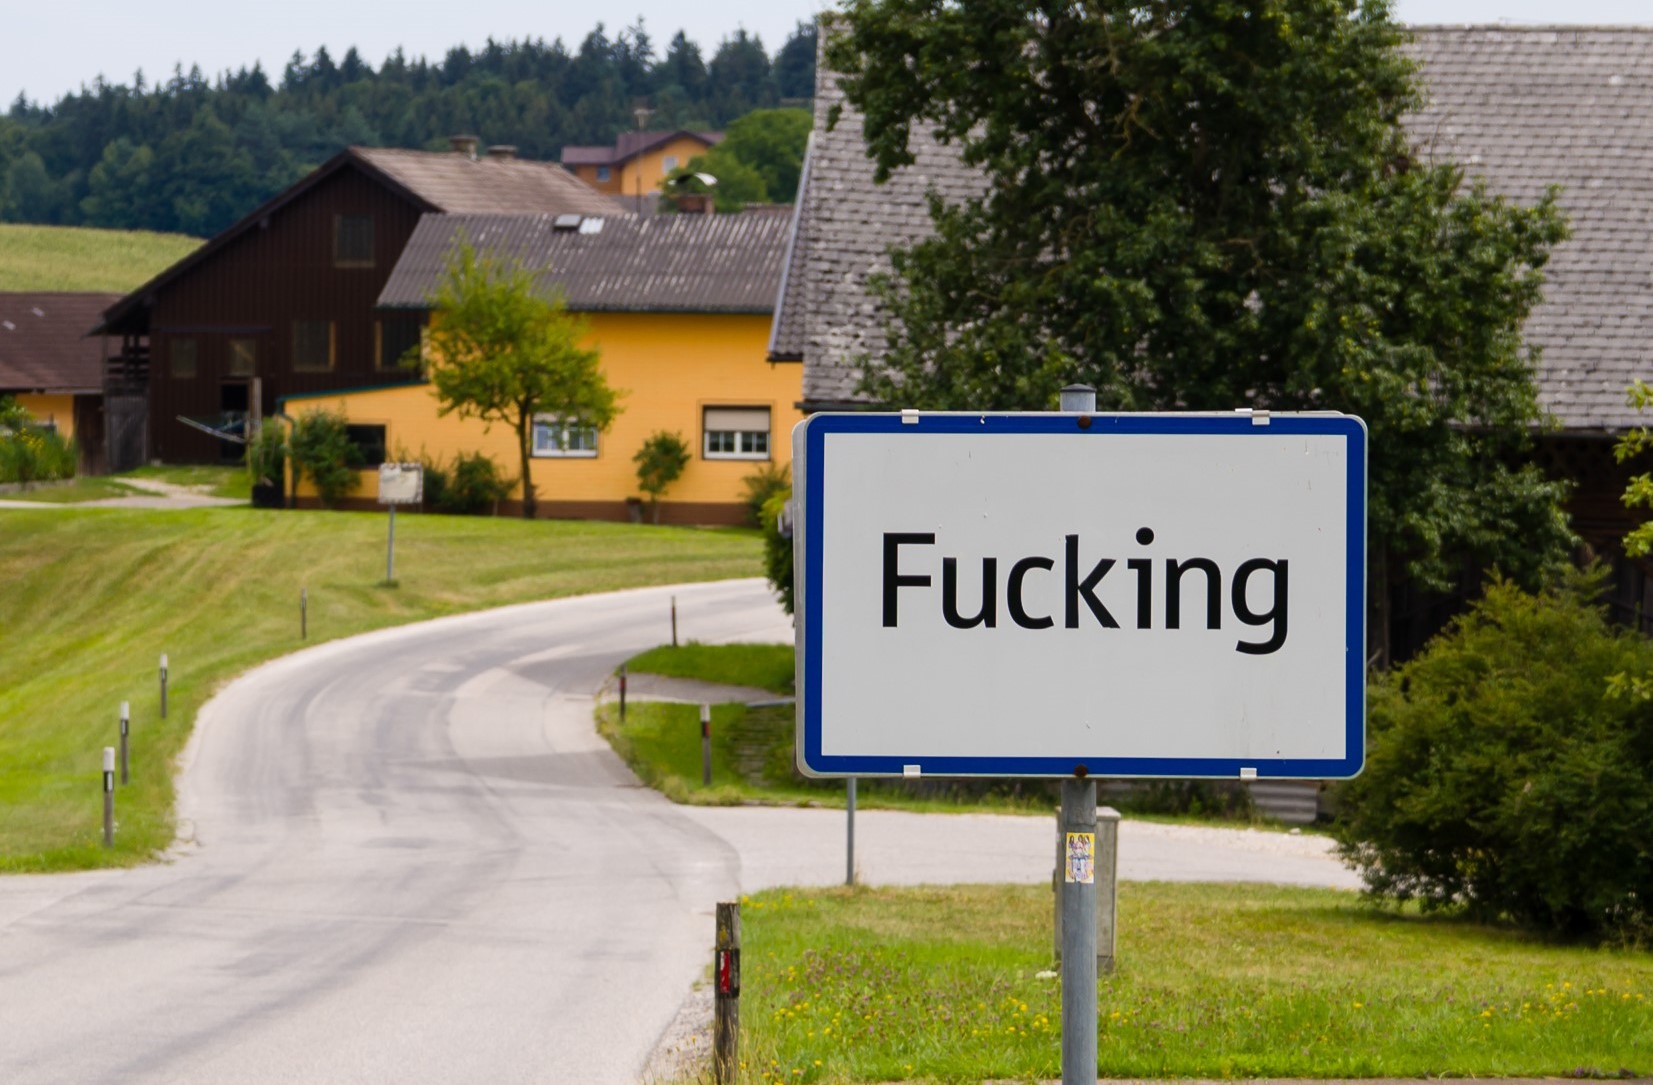 Αυστρία: Οι κάτοικοι του χωριού Fucking απηύδησαν και αλλάζουν την ονομασία του